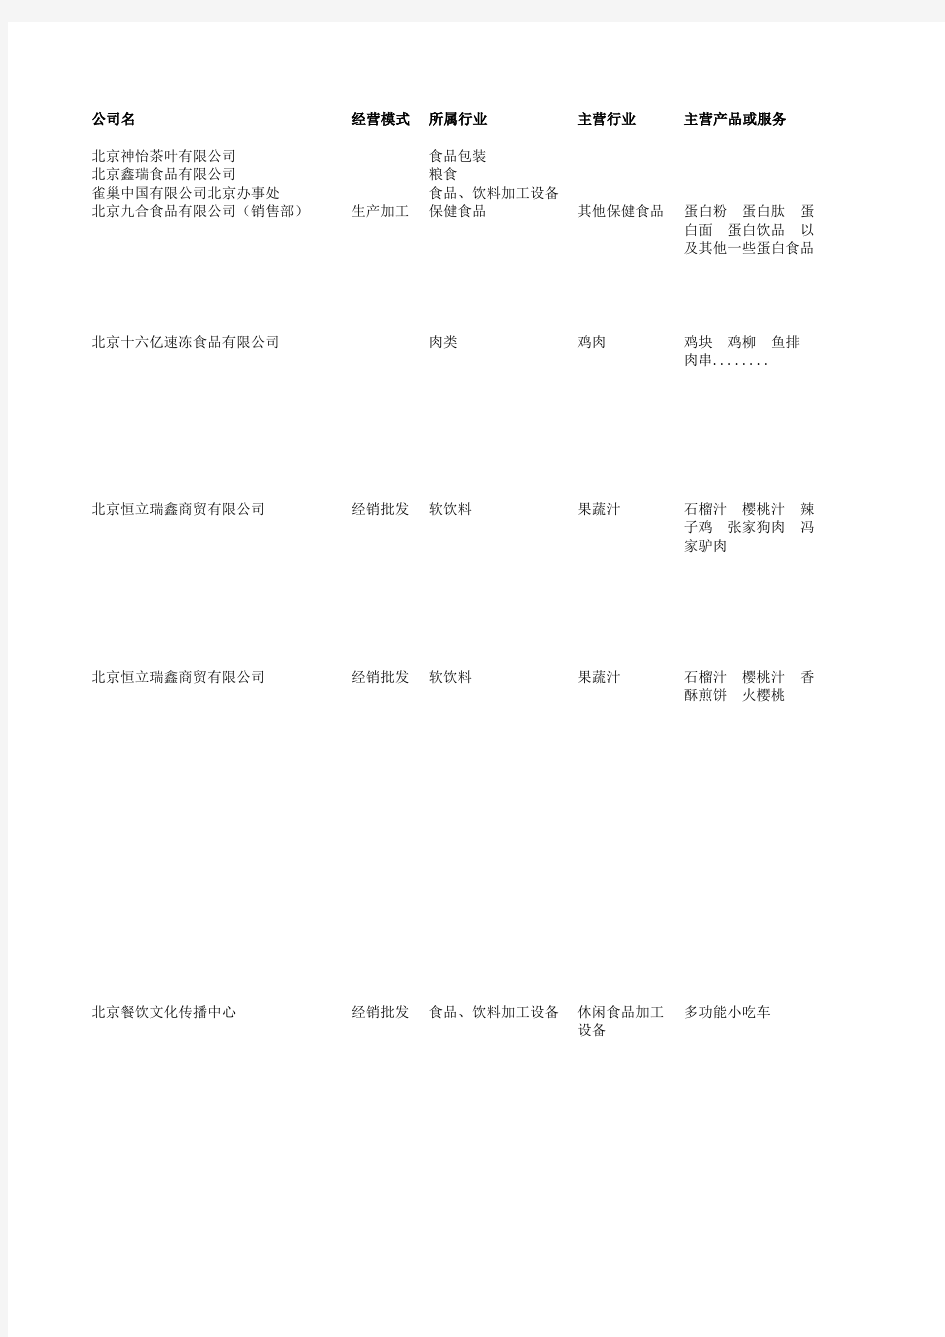 北京快速消费品(食品类)企业名录(样本)